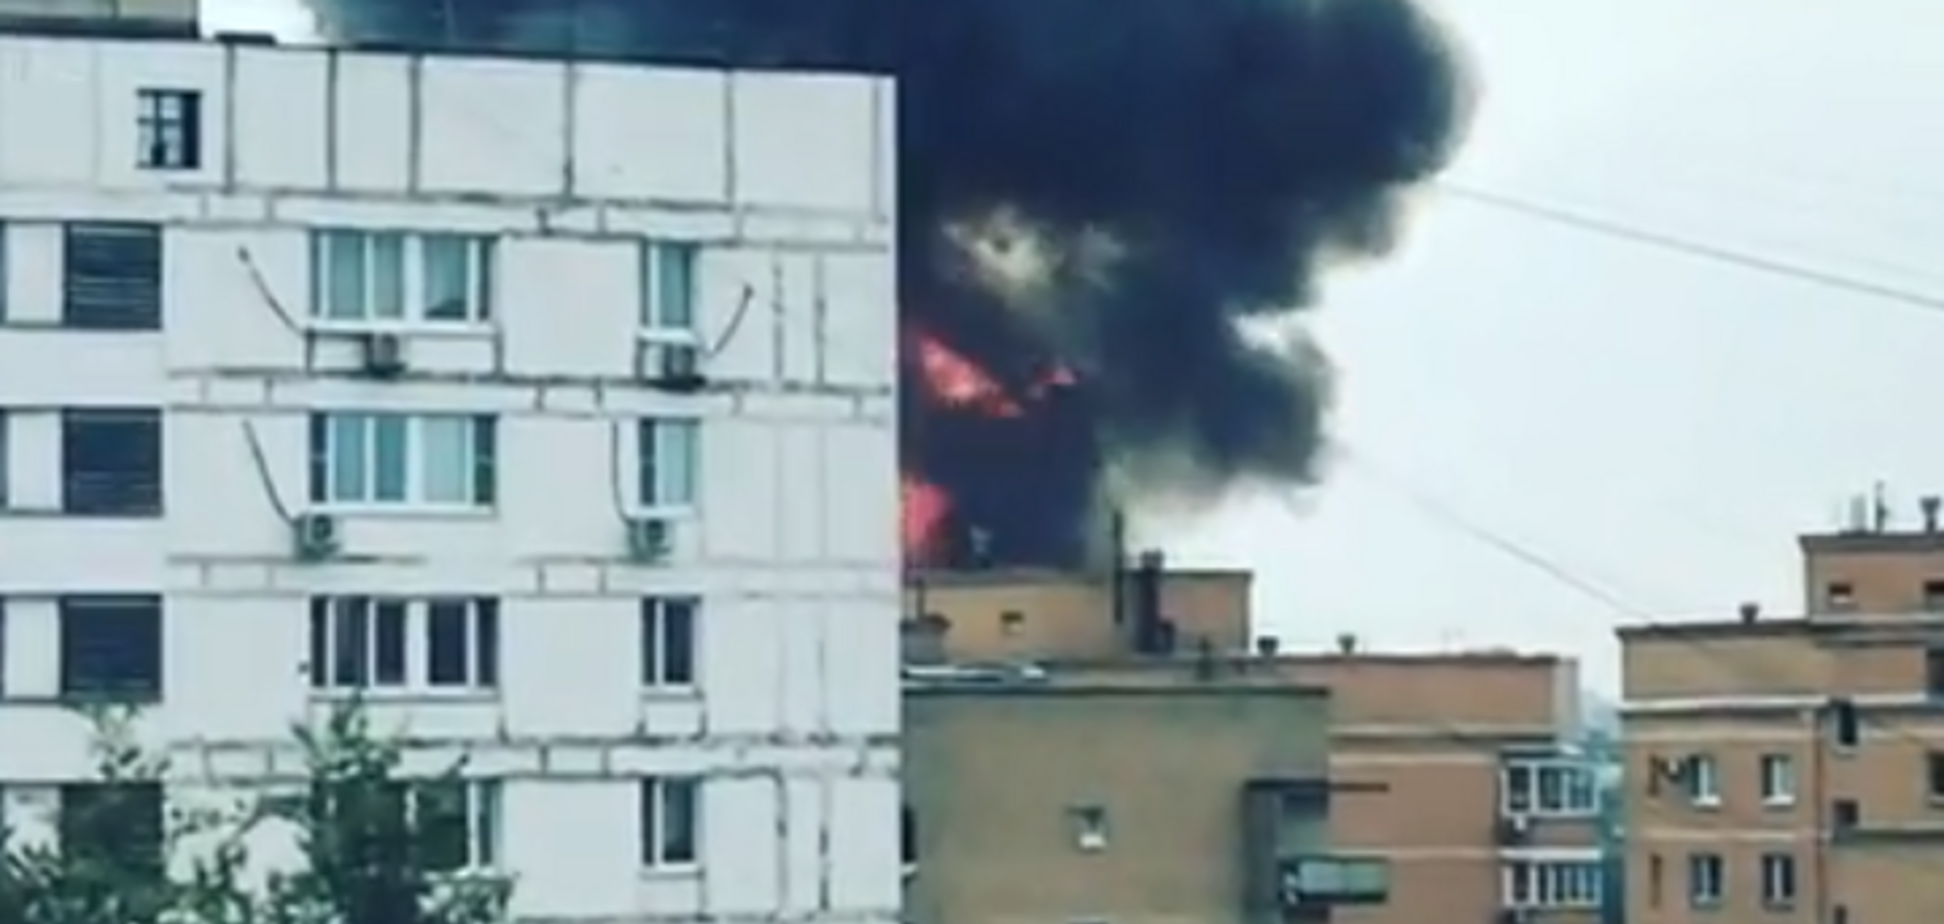 Авиация не справляется: в центре Москвы вспыхнул масштабный пожар. Фото и видео